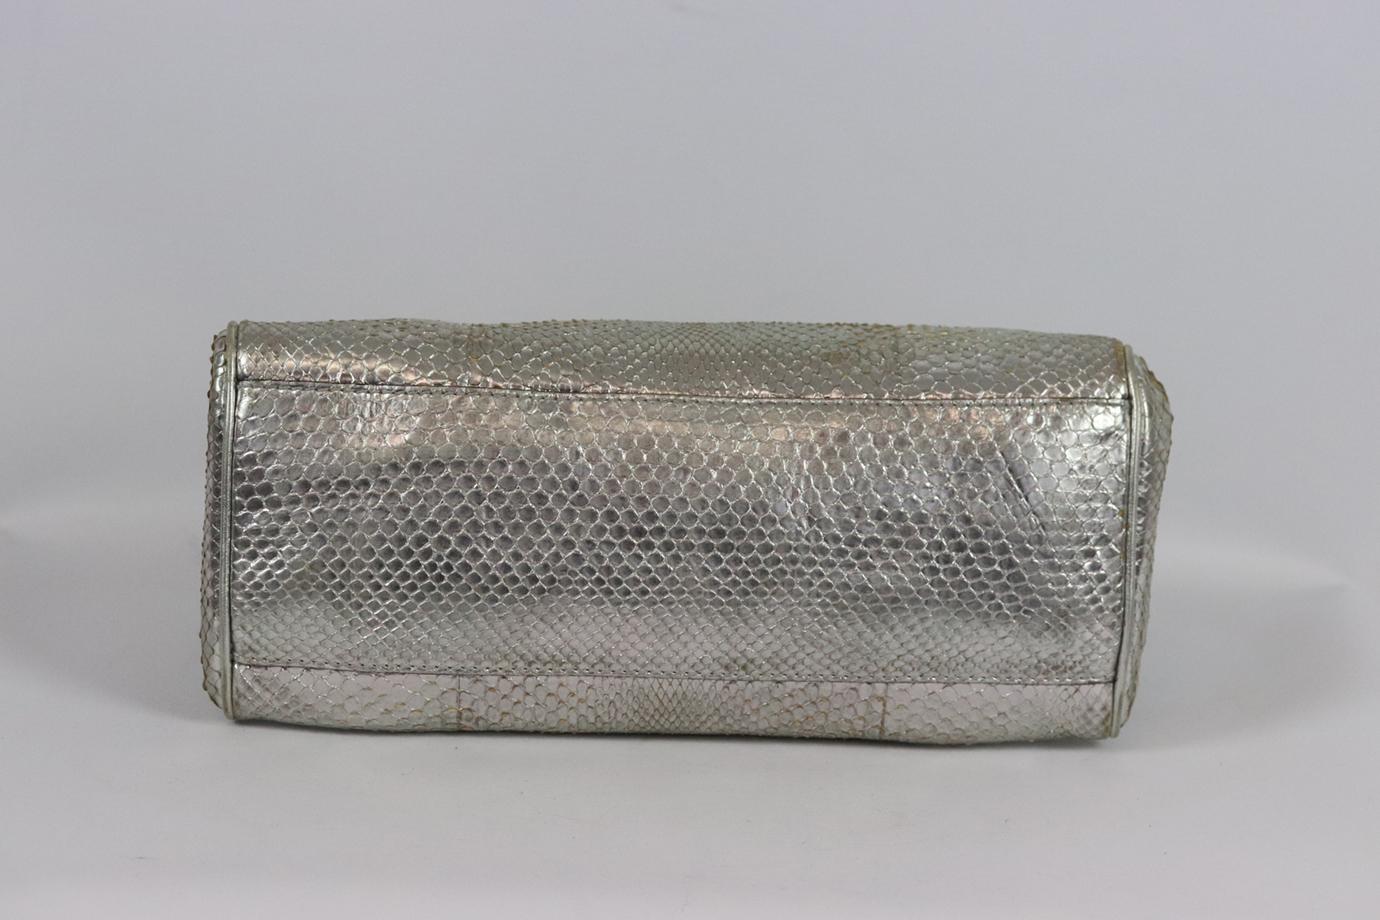 Roberto Cavalli Metallic Python Tote Bag For Sale 2